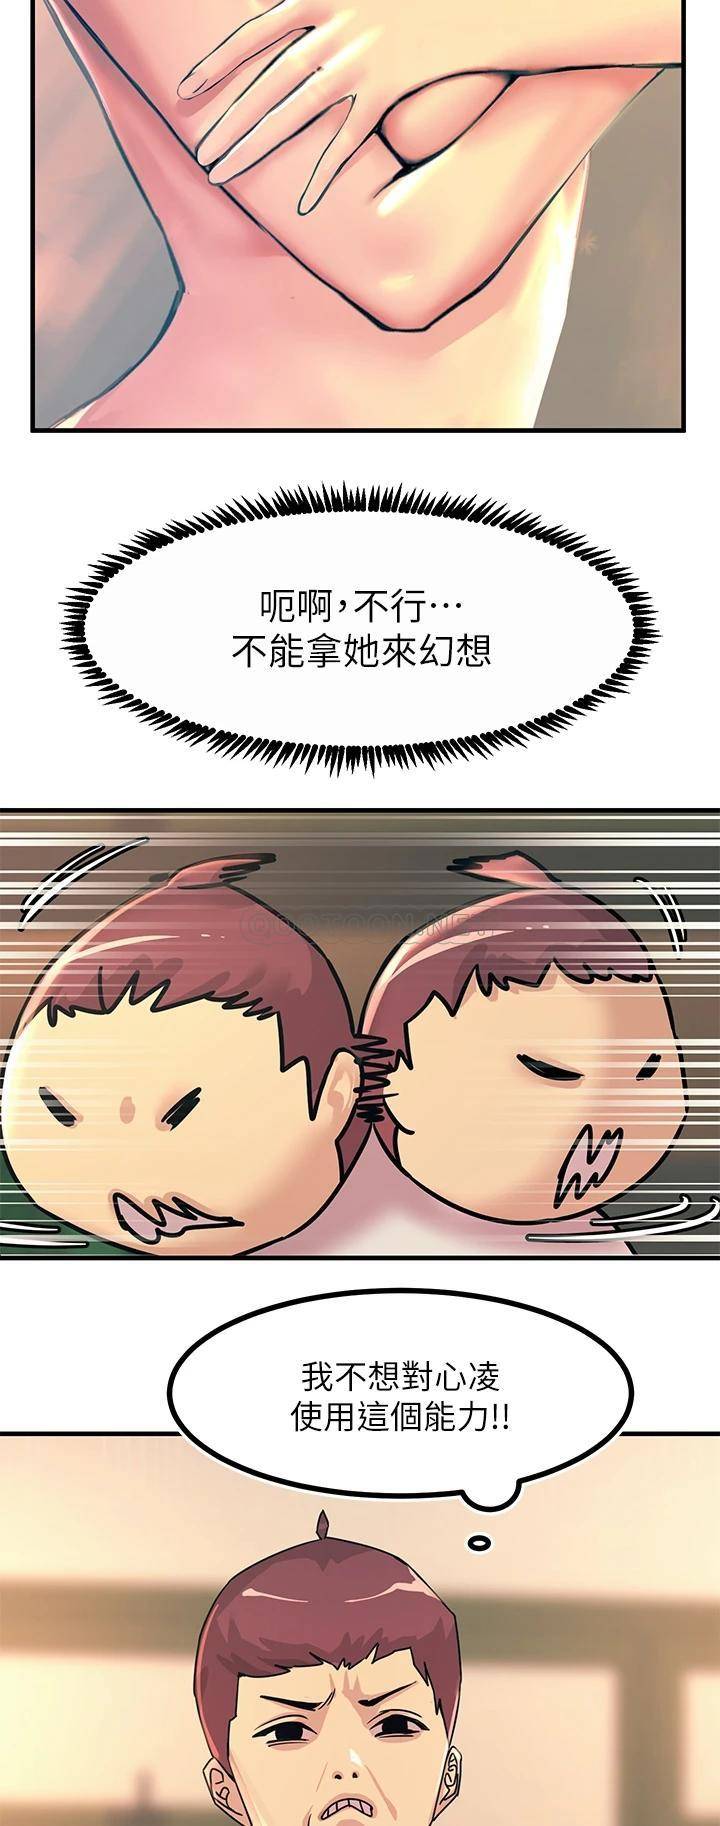 韩国污漫画 觸電大師 第9话 被奴隶搞到有感觉 50